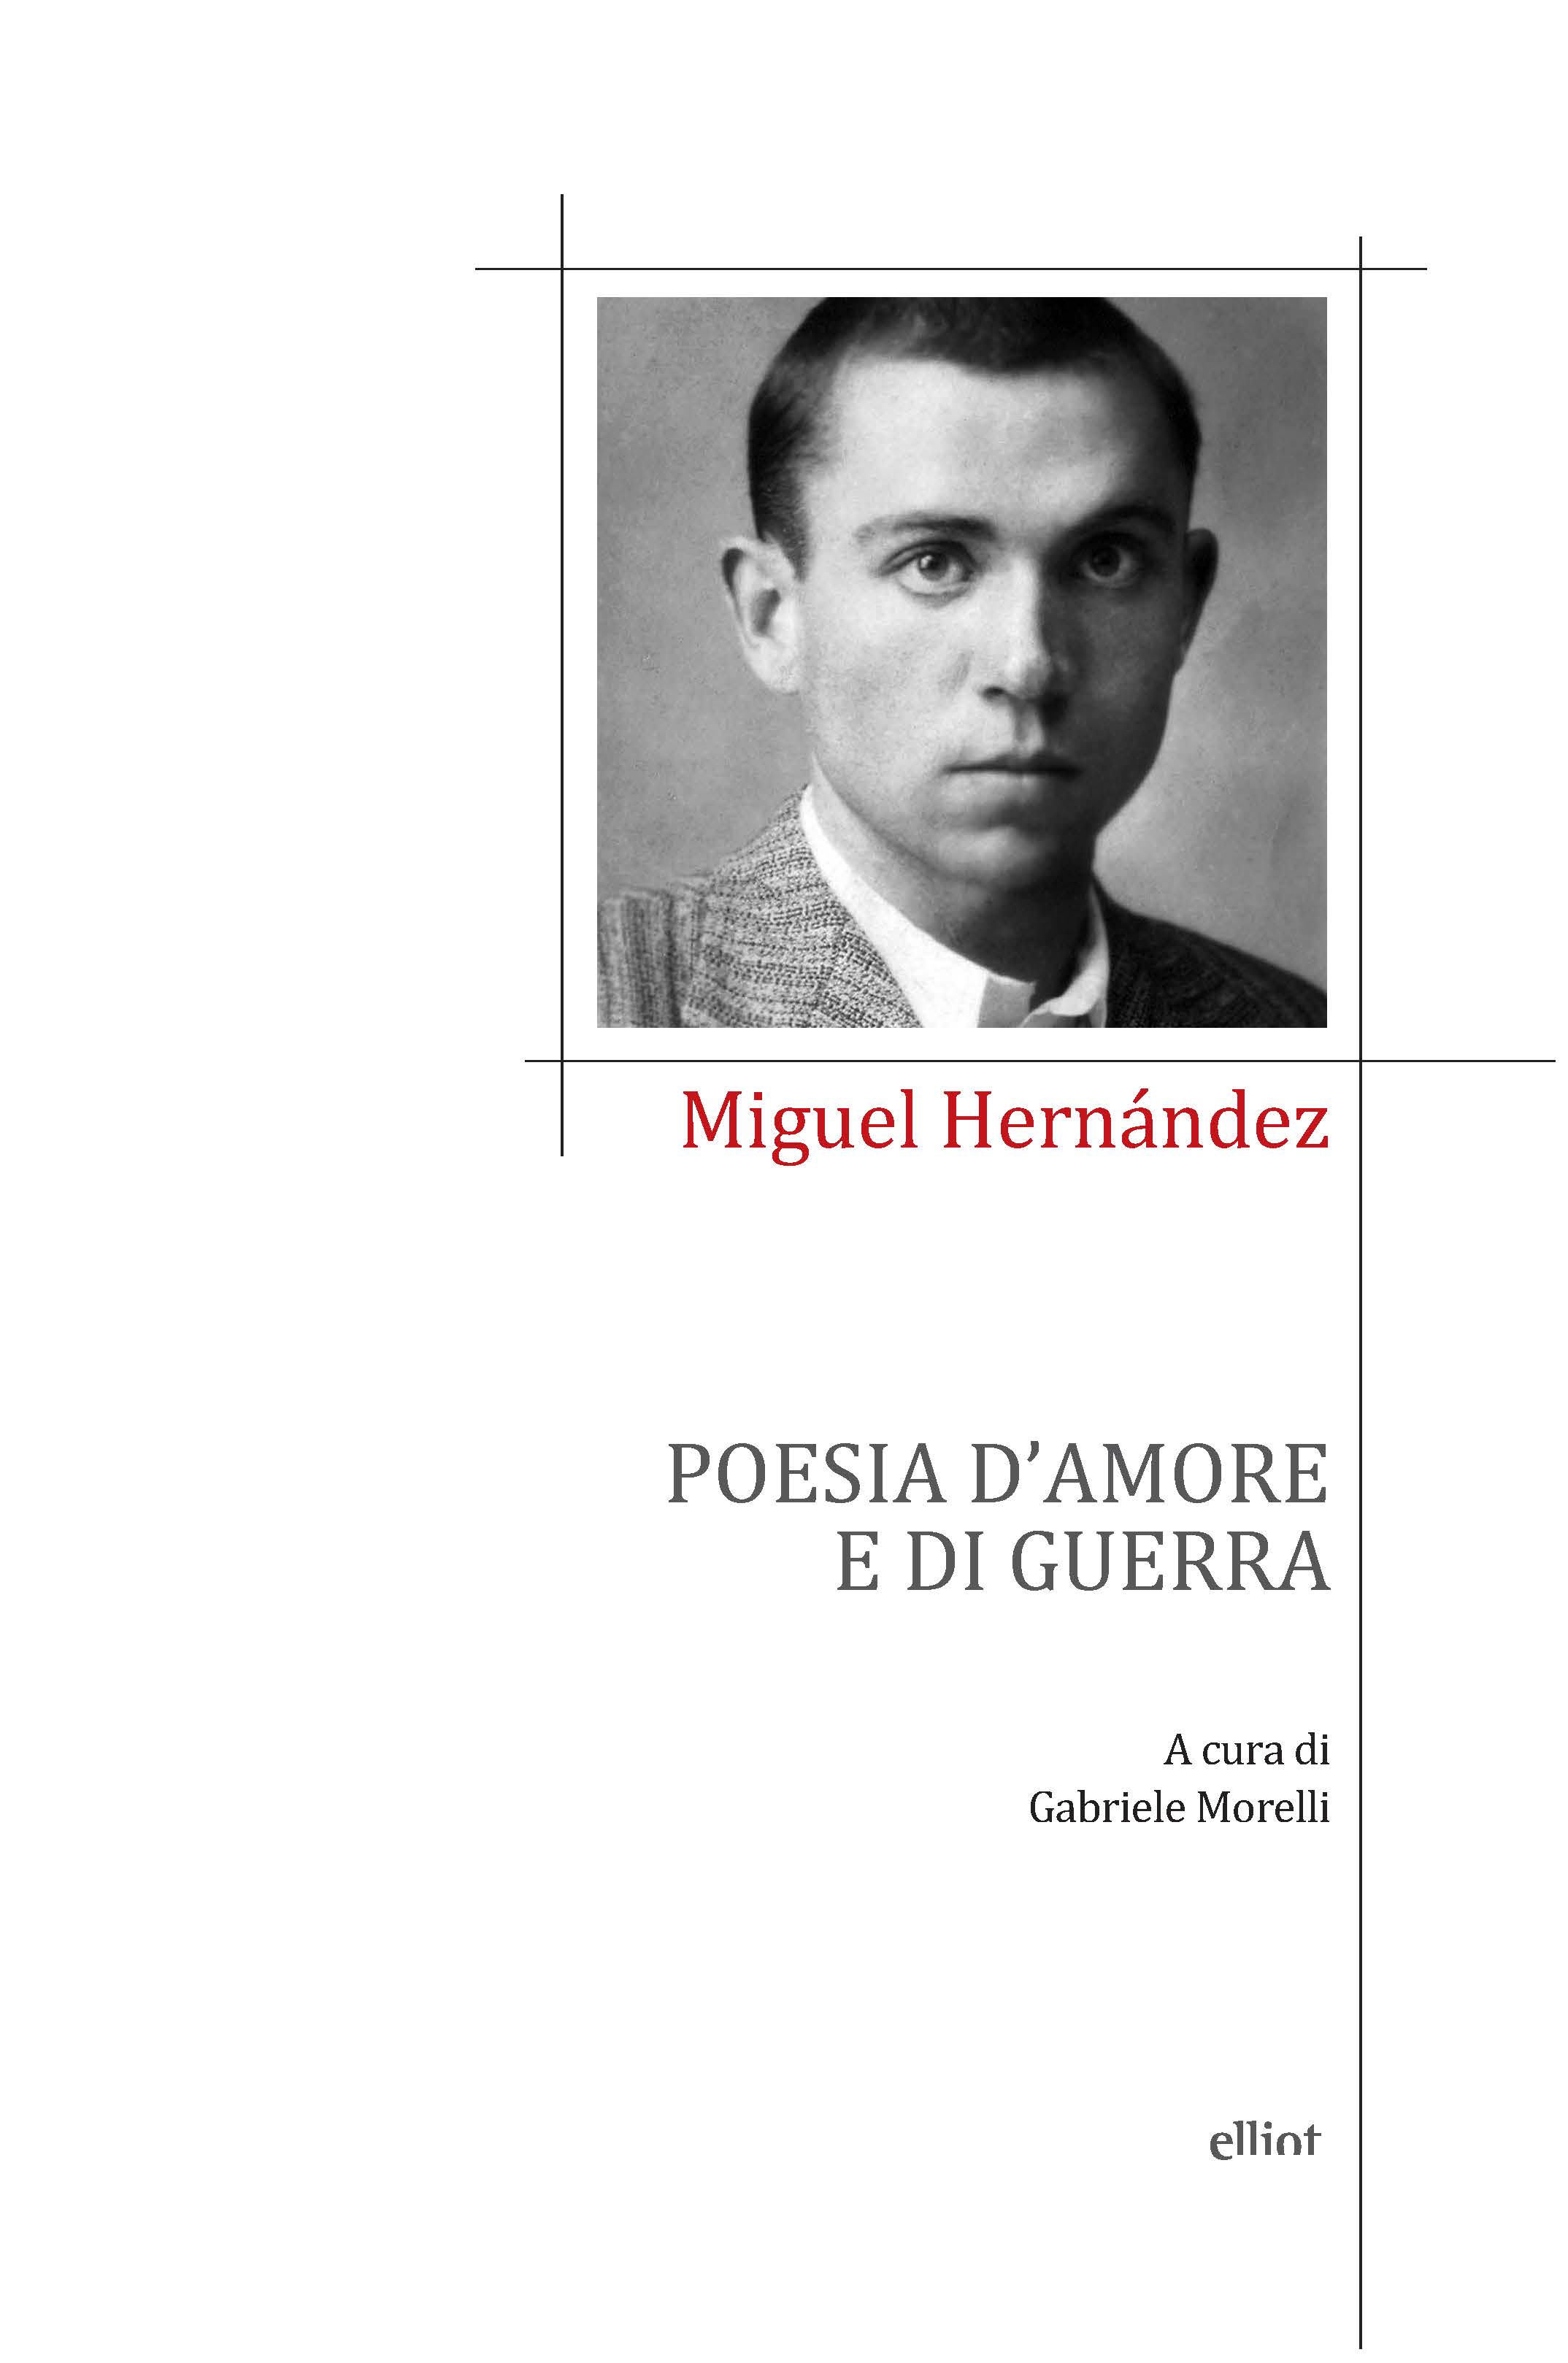 Miguel Hernández - Poesie d'amore e di guerra - Elliot Edizioni